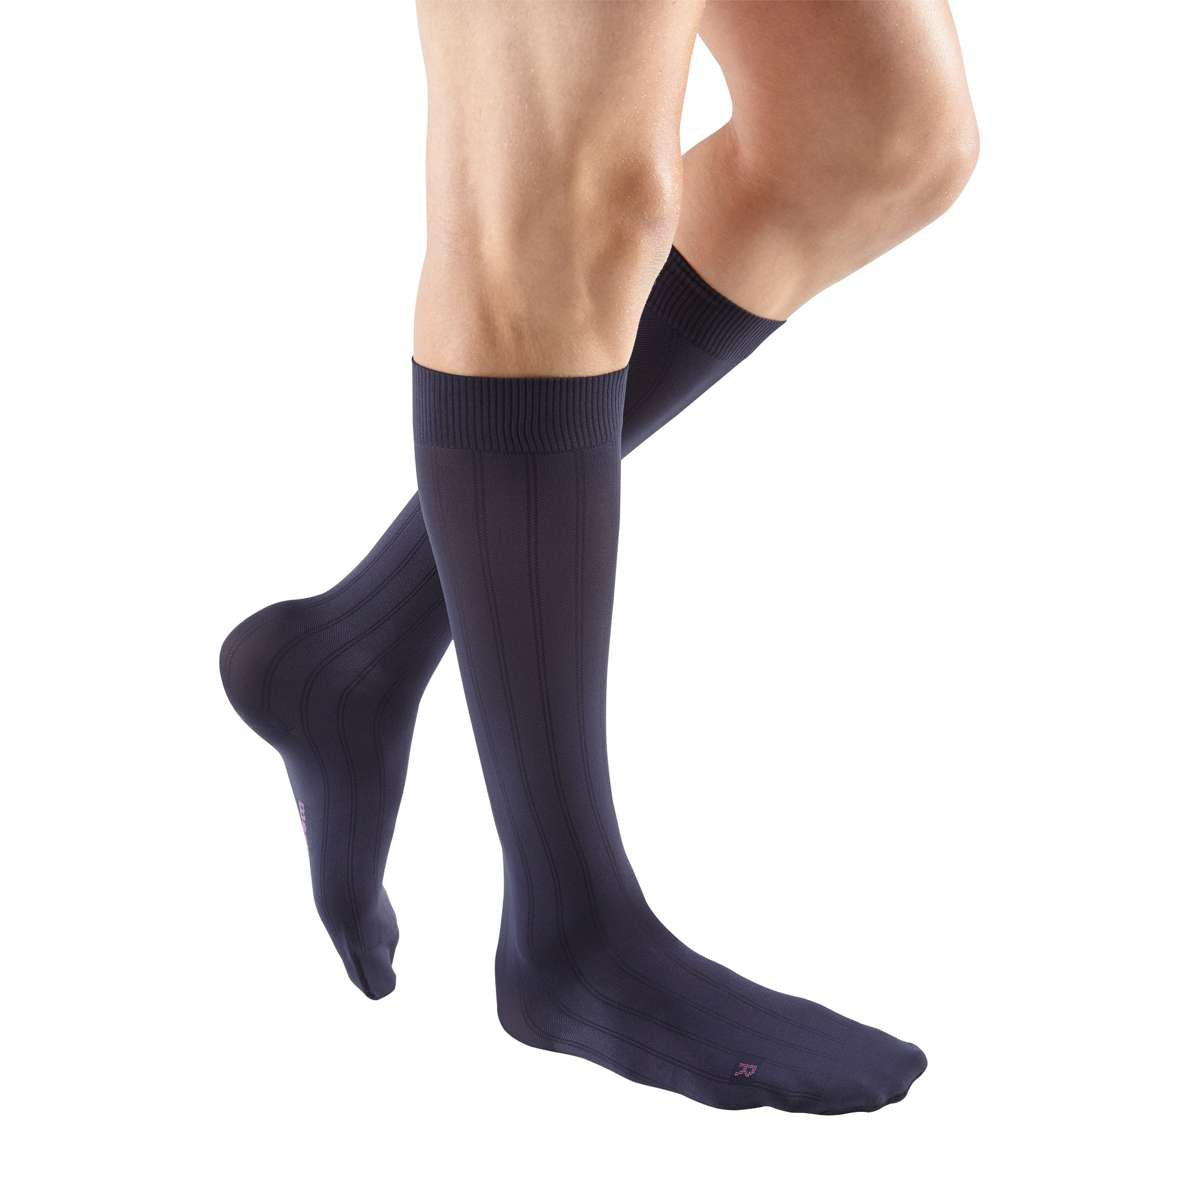 mediven men classic 30-40 mmHg calf closed toe standard